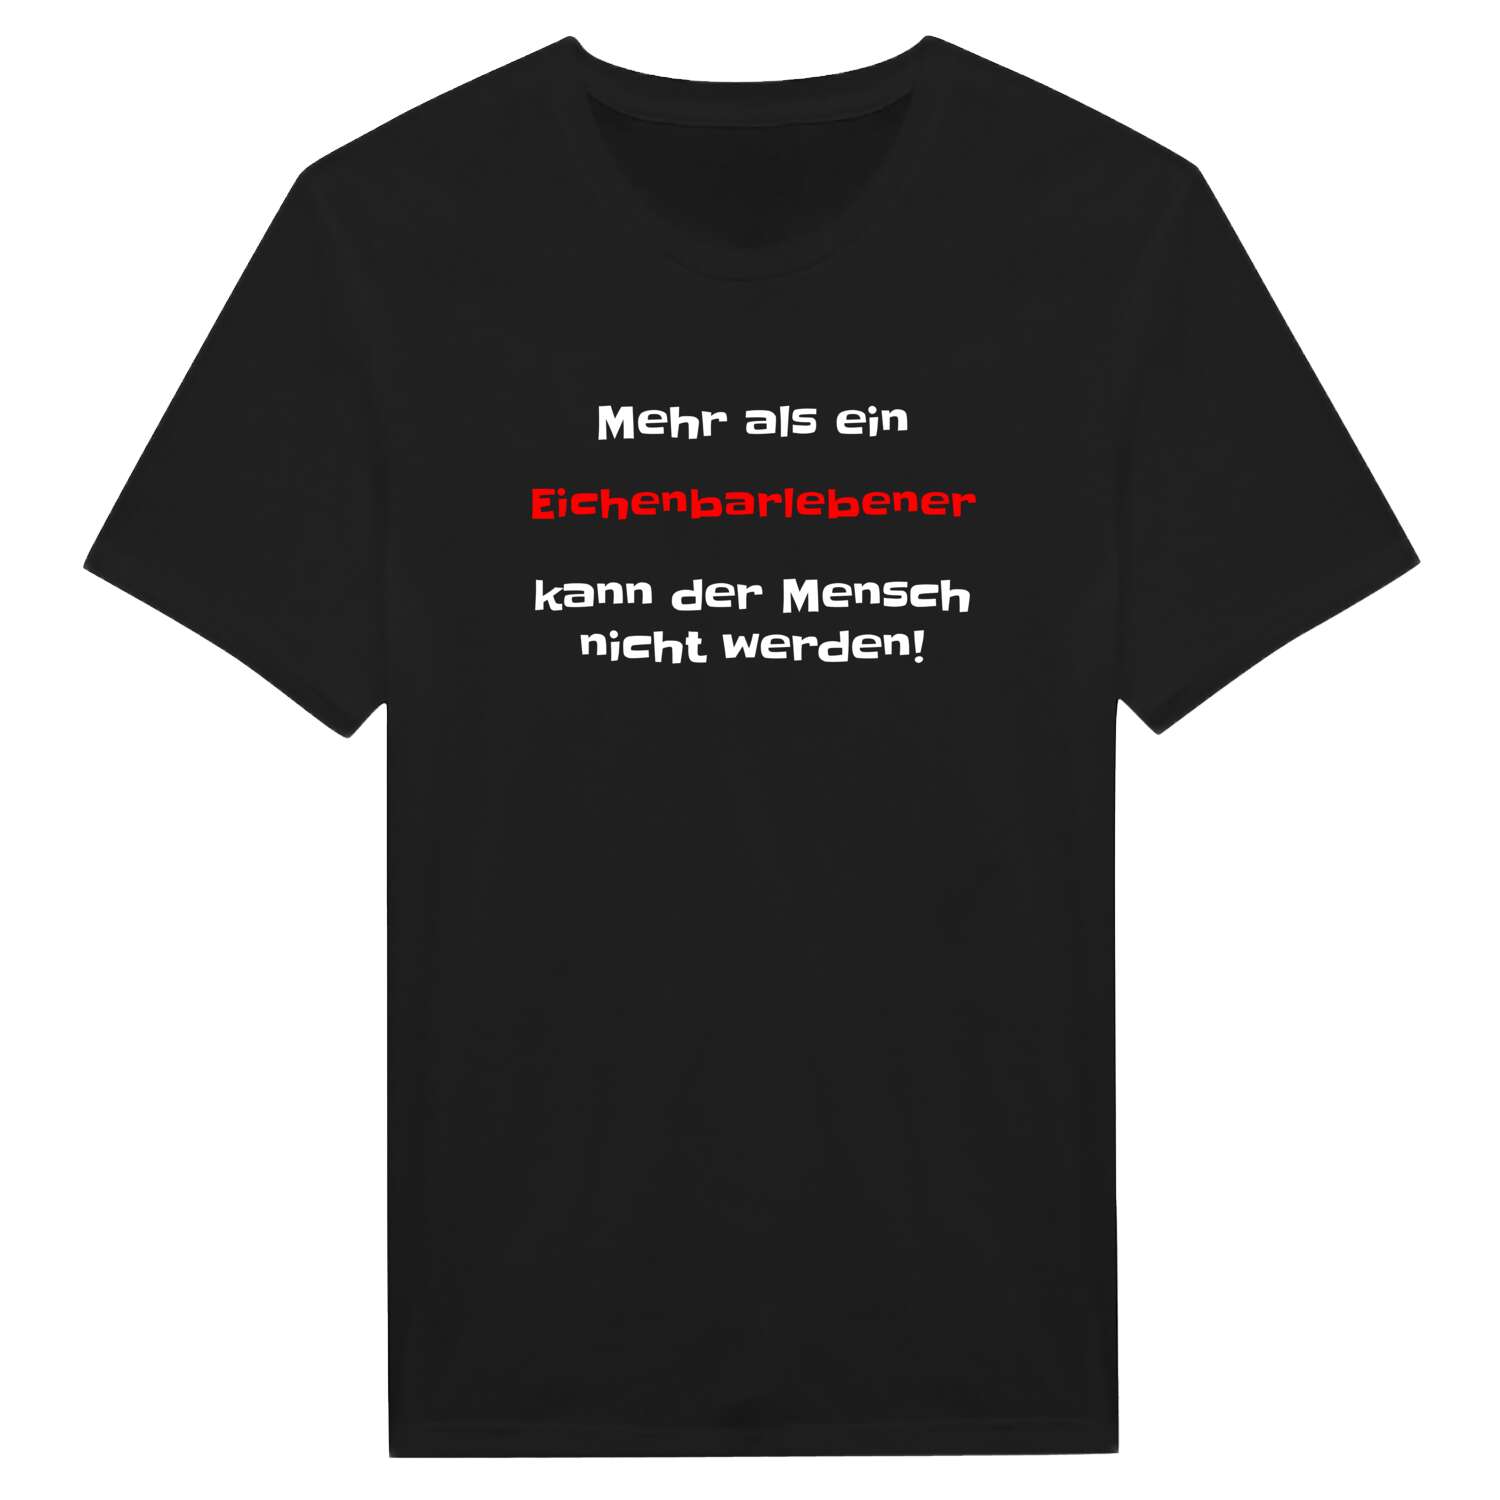 Eichenbarleben T-Shirt »Mehr als ein«